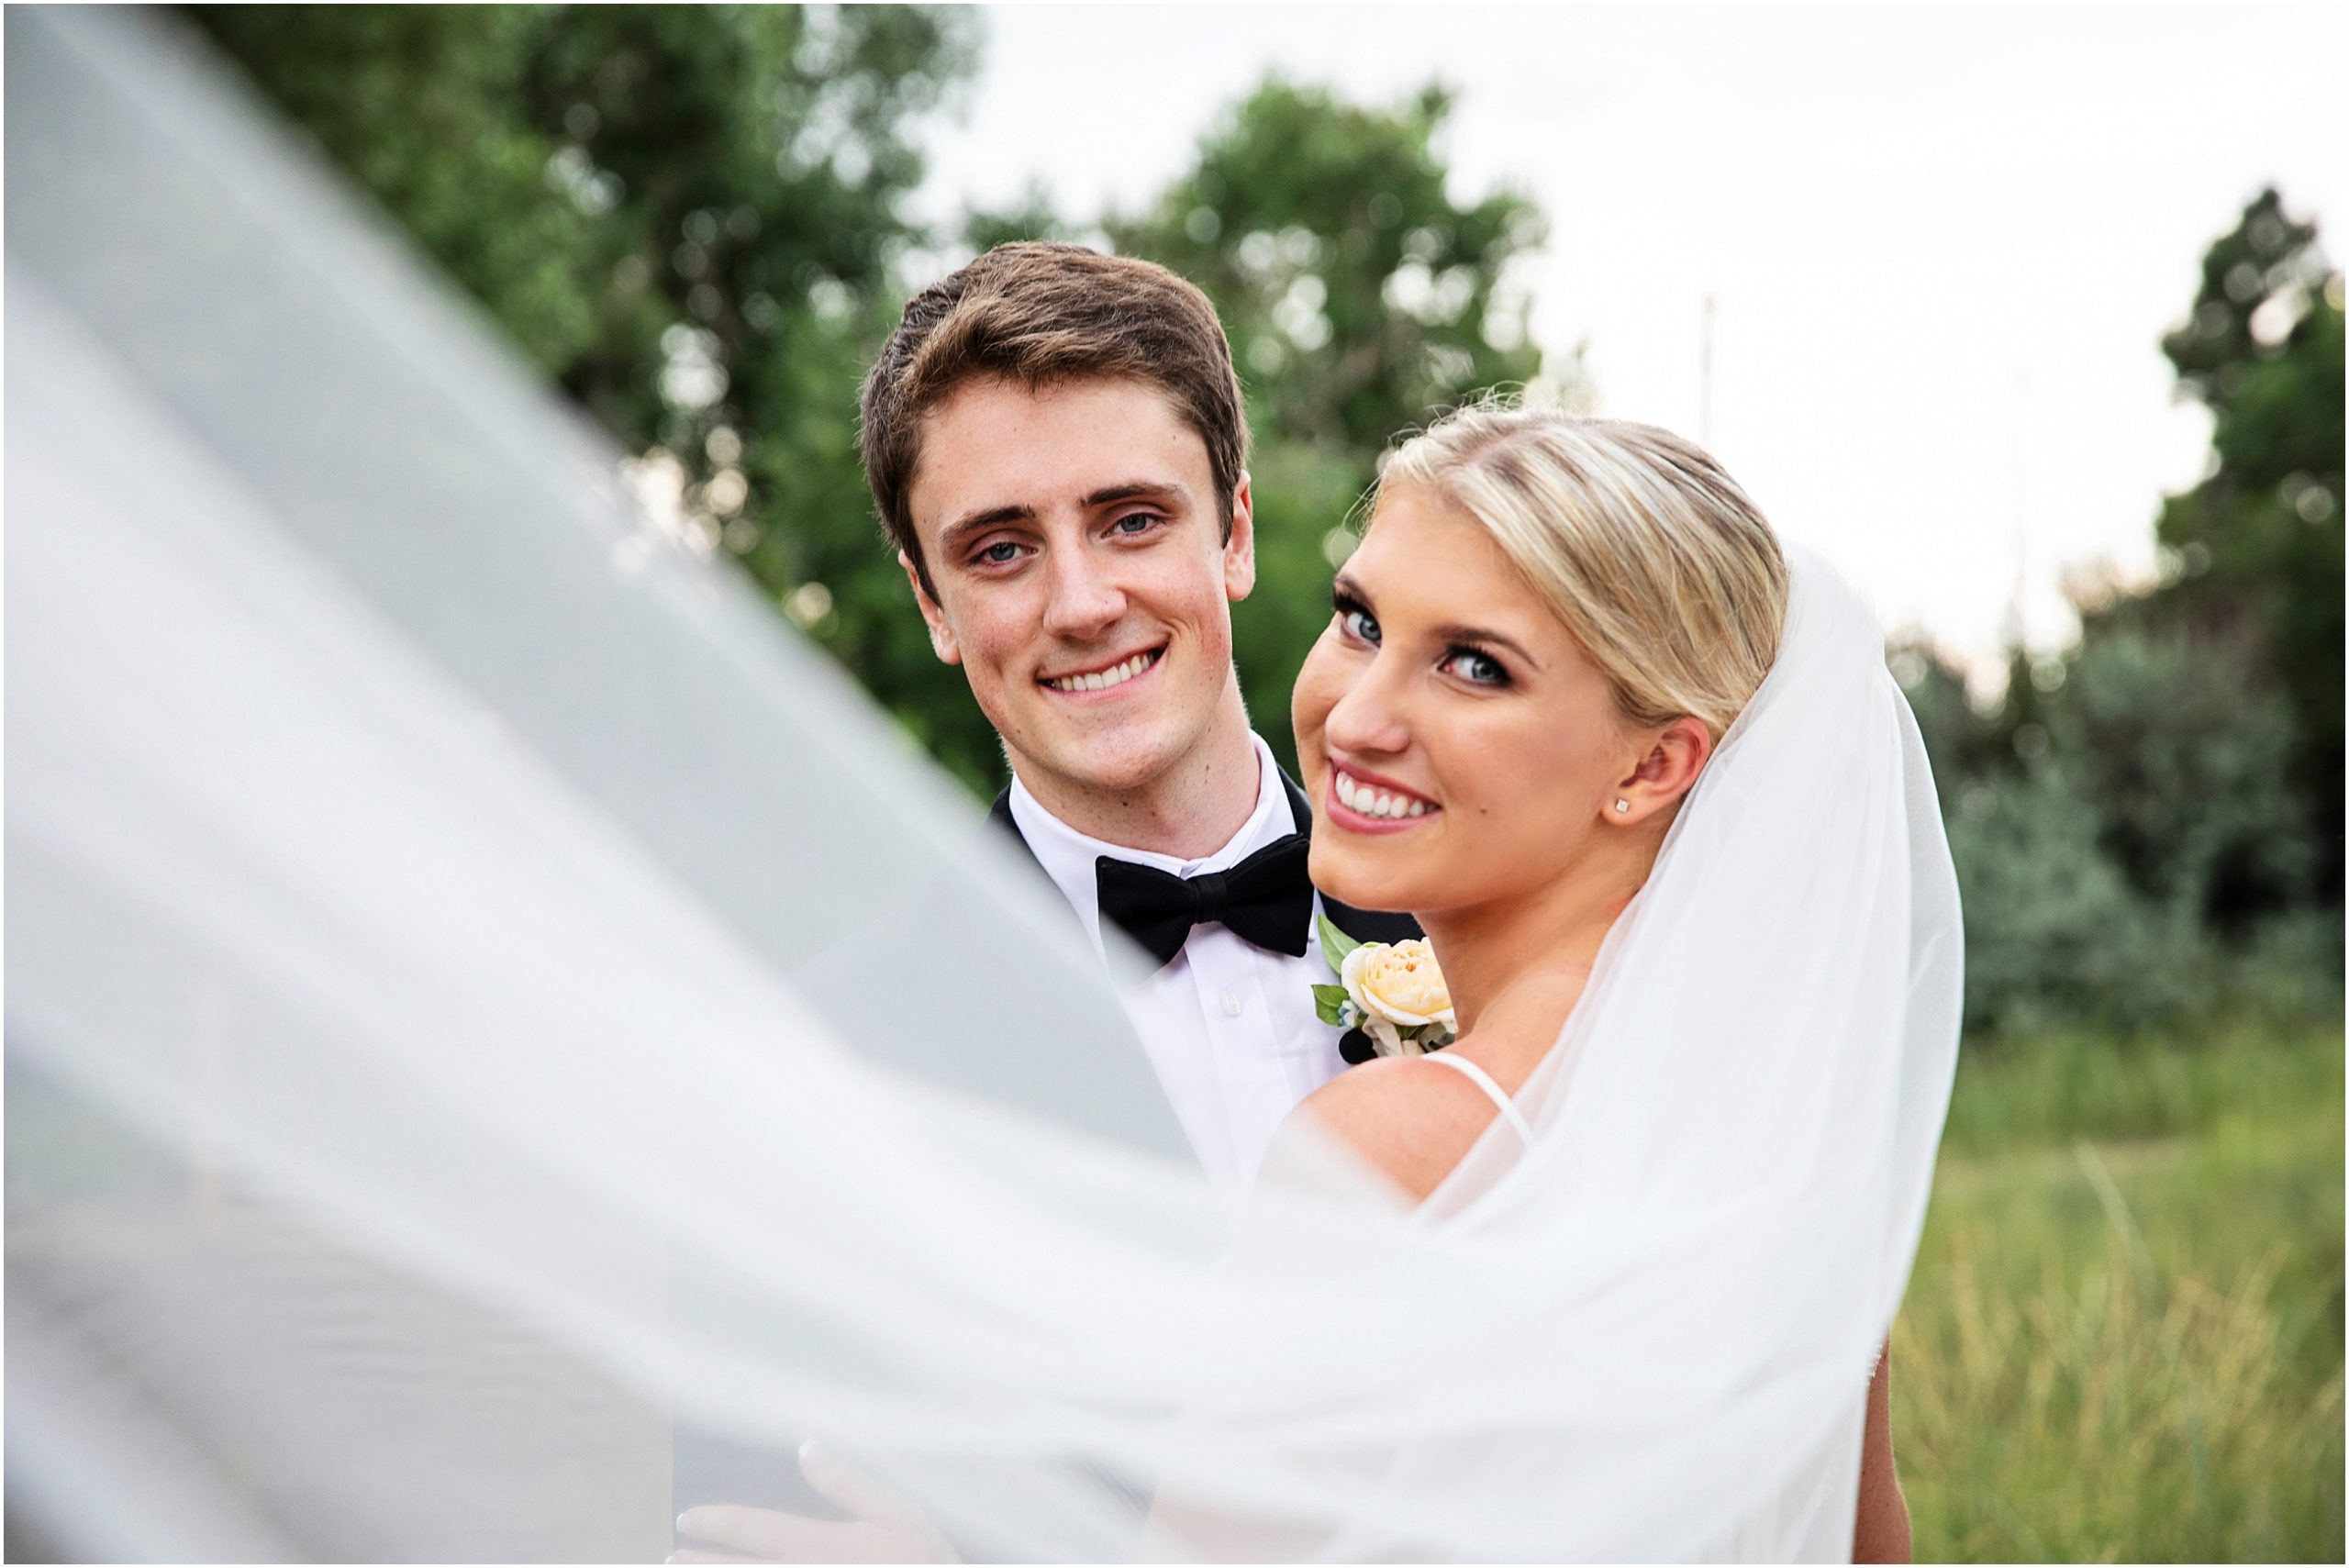 Colorado Springs Wedding Photographer | Tina Joiner Photography Blog